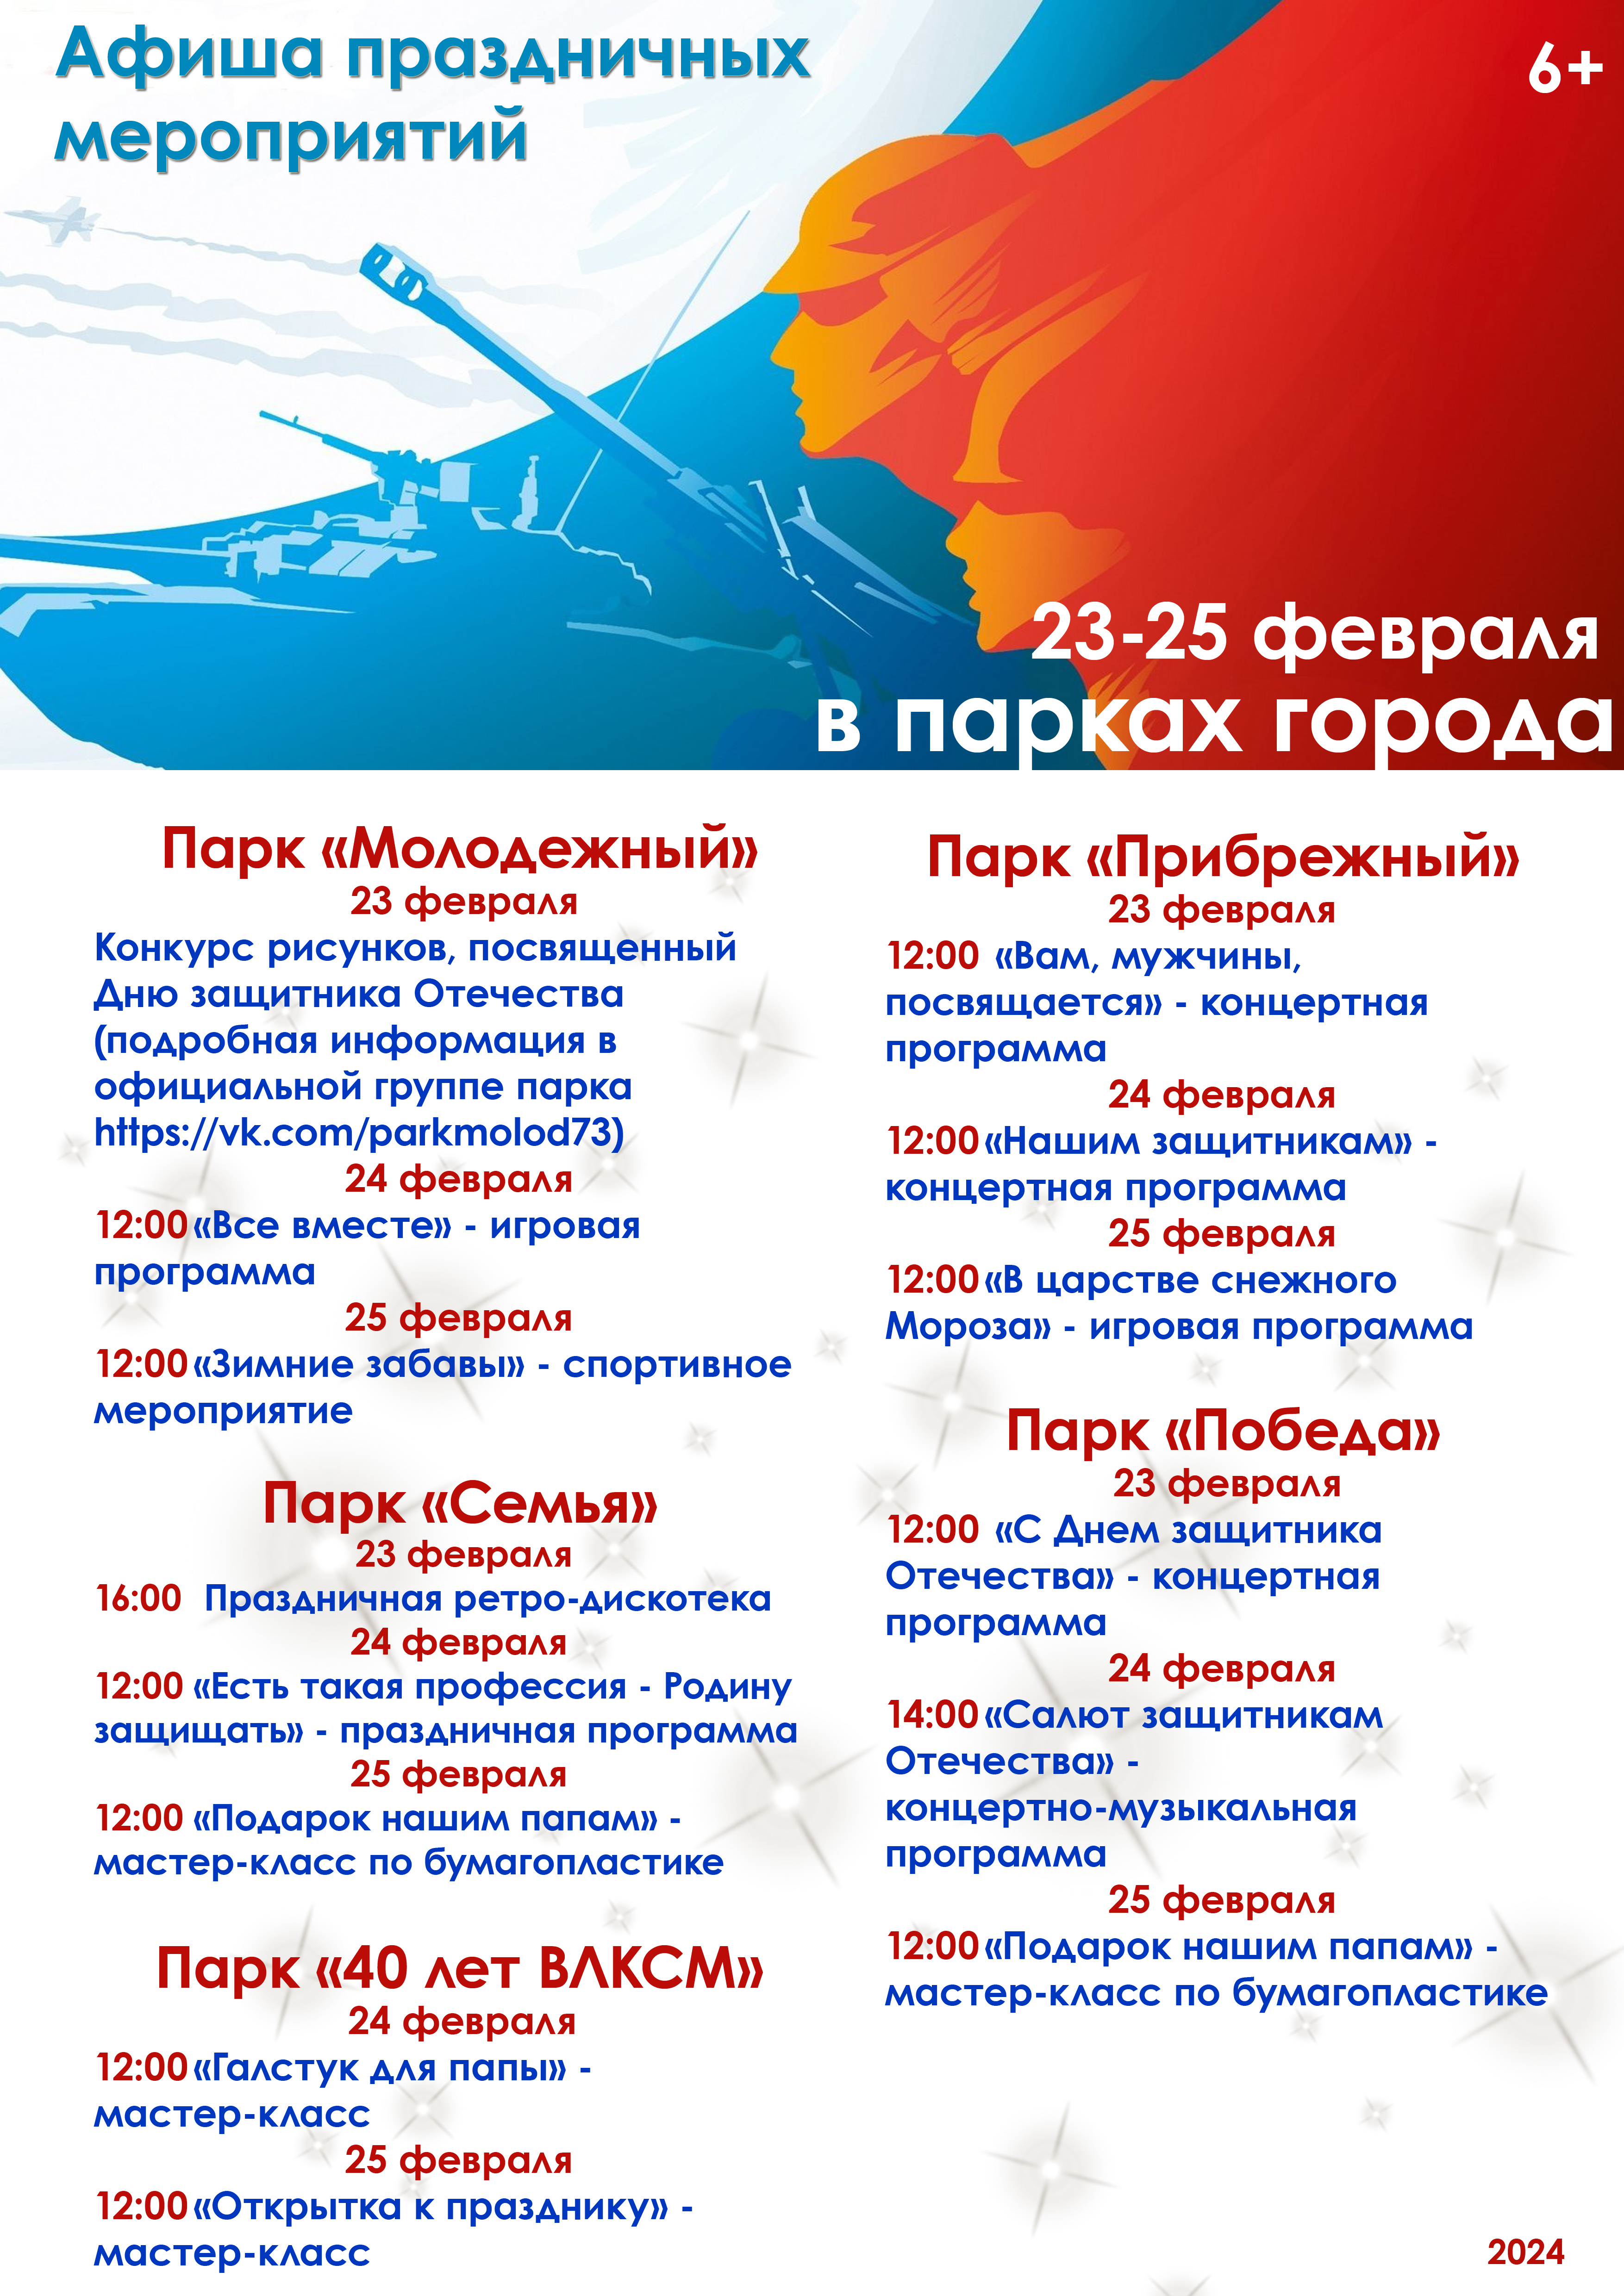 В парках Ульяновска пройдут праздничные мероприятия ко Дню защитника Отечества.